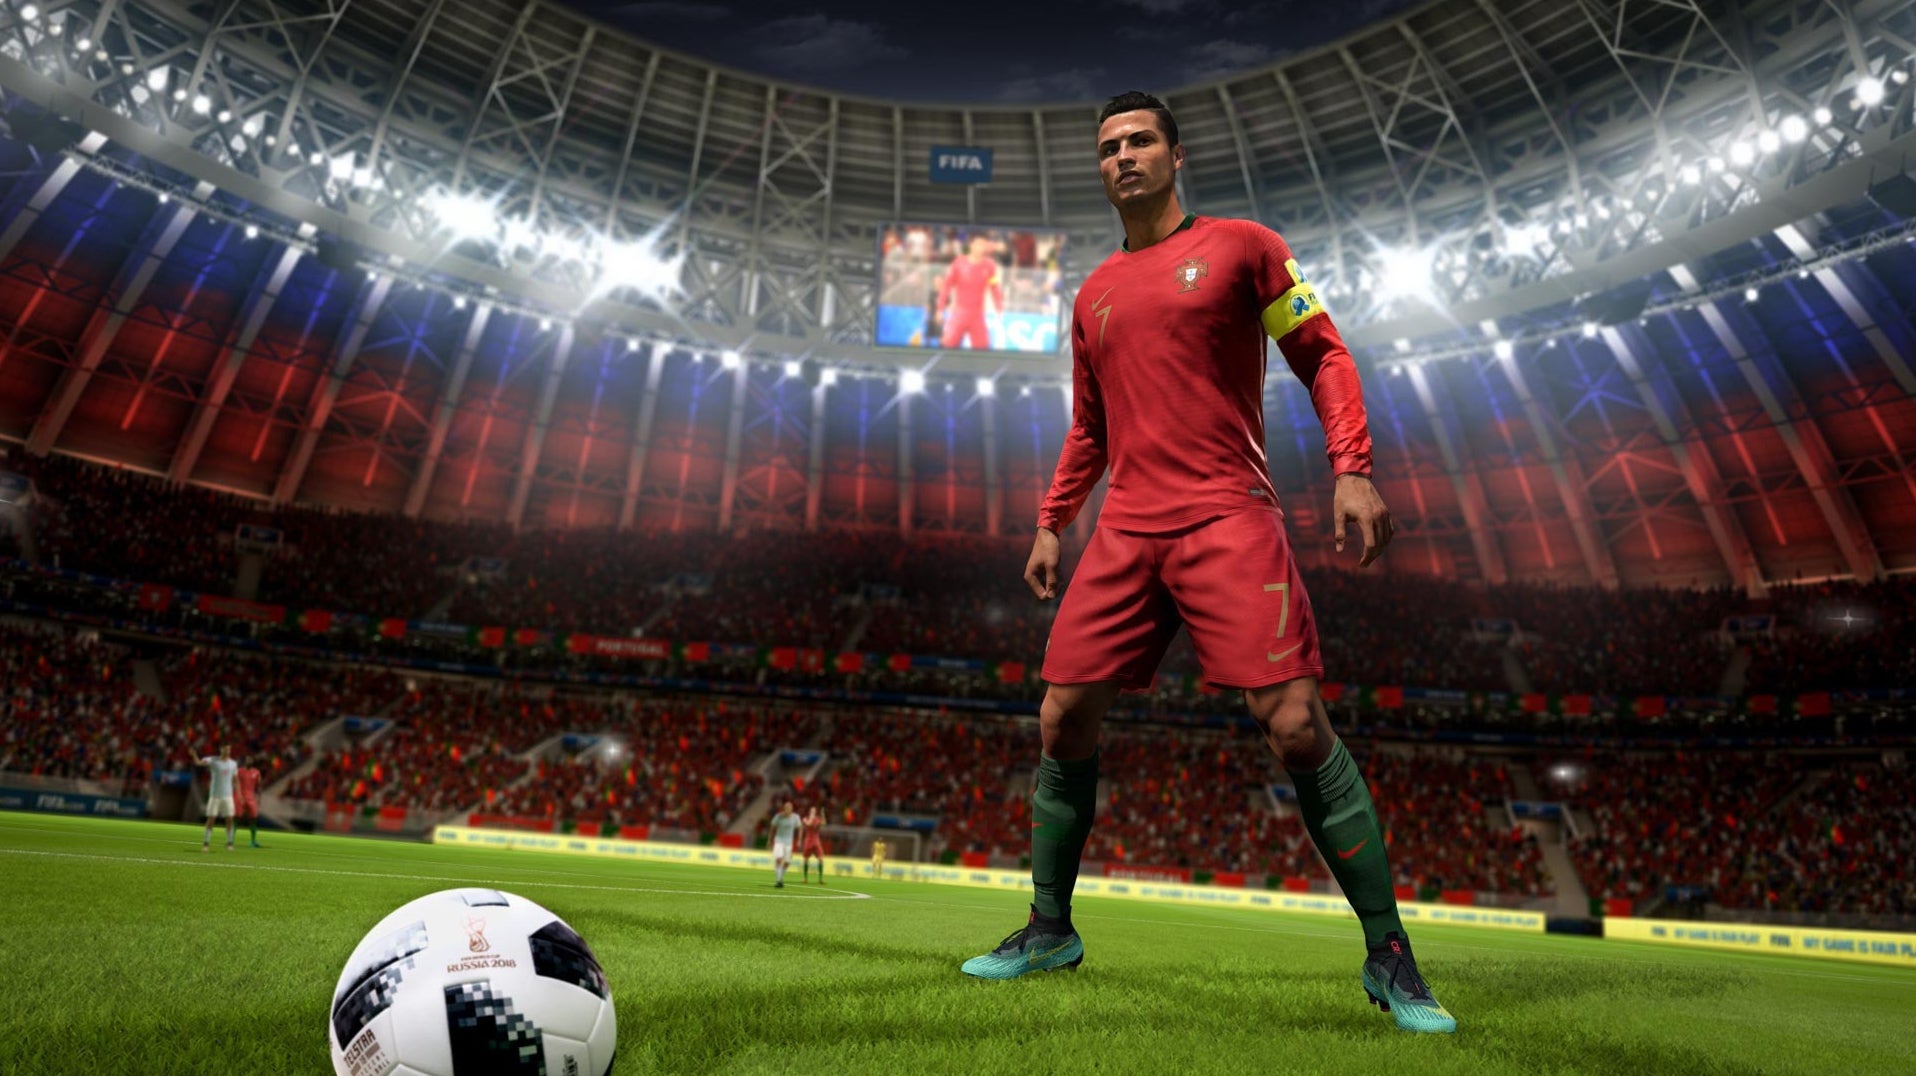 Immagine di FIFA 18 ancora in testa nella classifica software italiana. Chiudono il podio Call of Duty: WWII e GTA 5